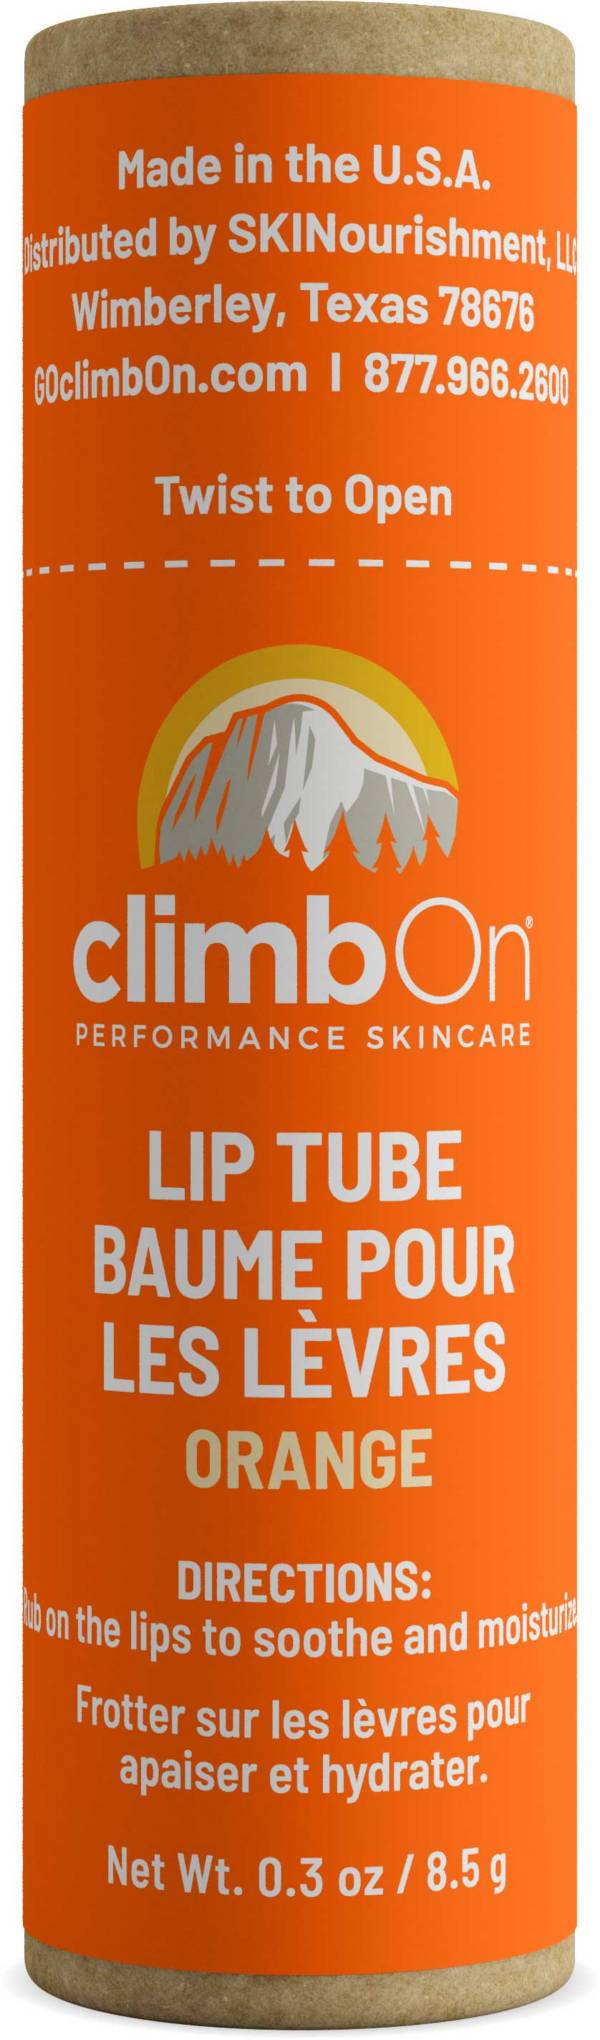 climbOn Orange Lip Tube 0.3 oz product image